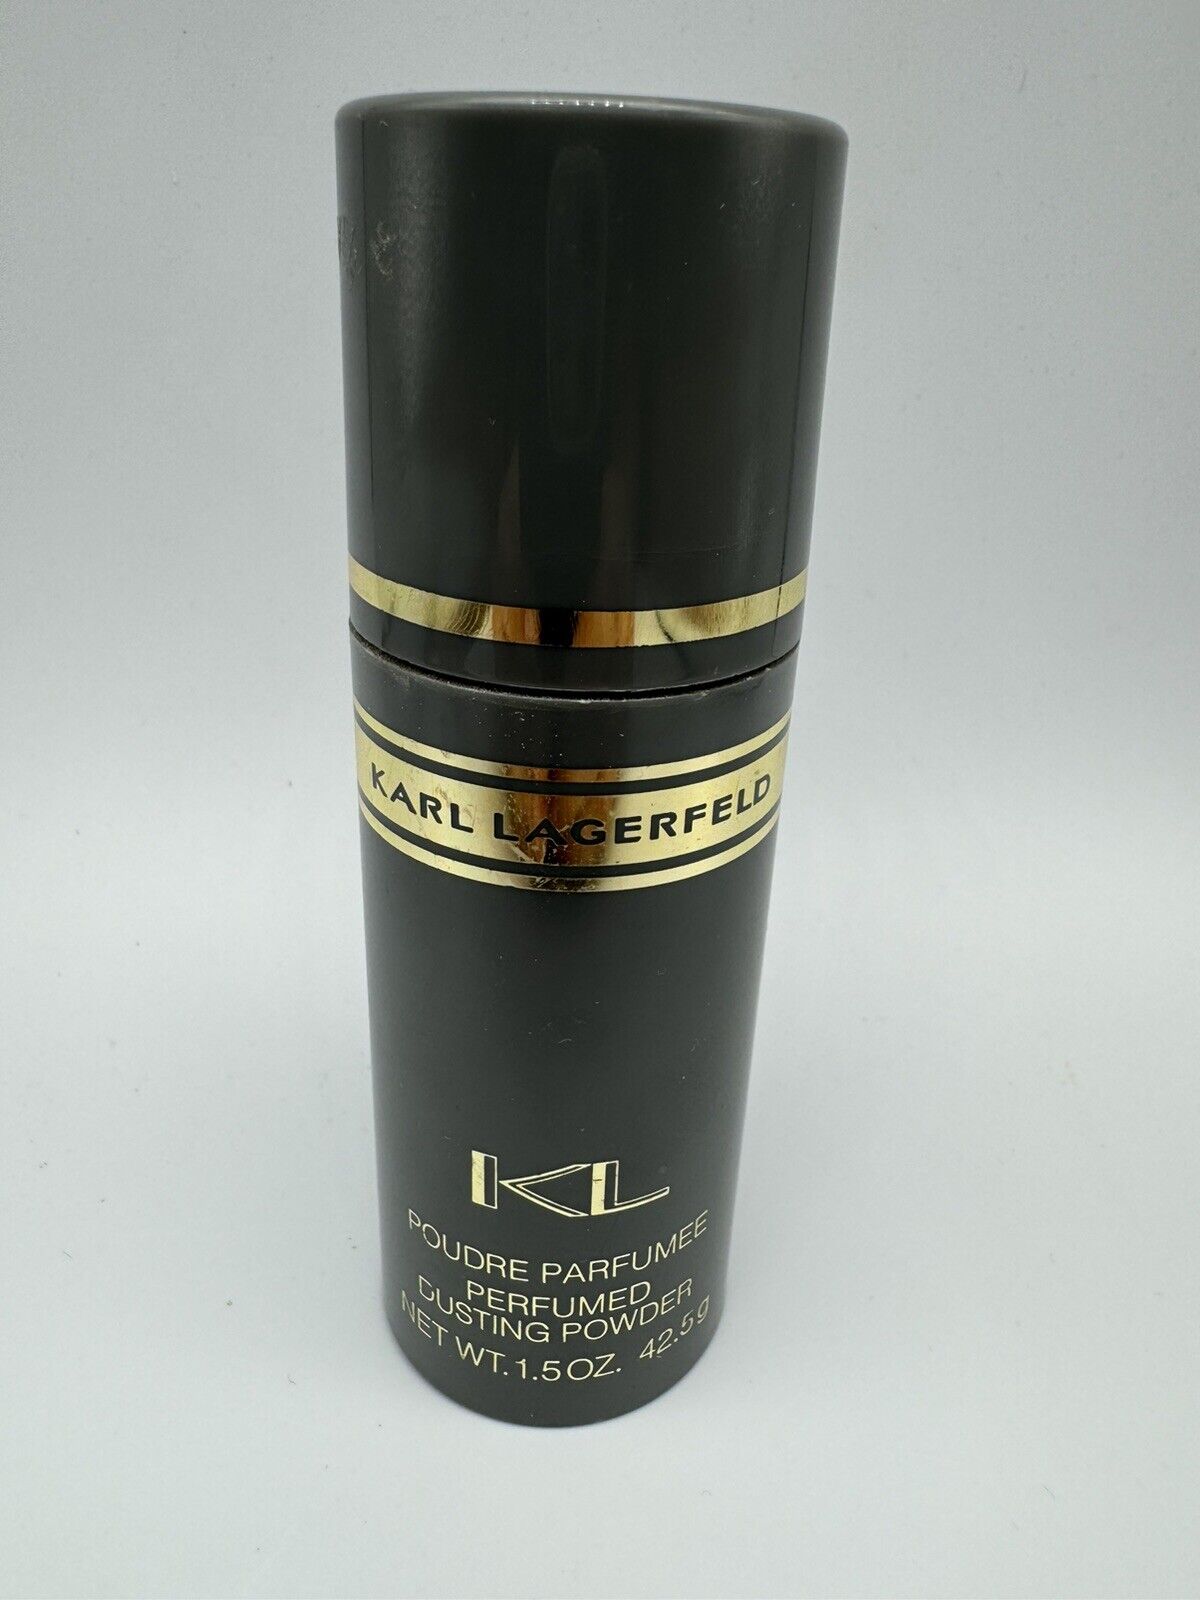 KL Karl Lagerfeld Vintage Poudre Parfumee Perfumed Dusting Powder 1.5 oz